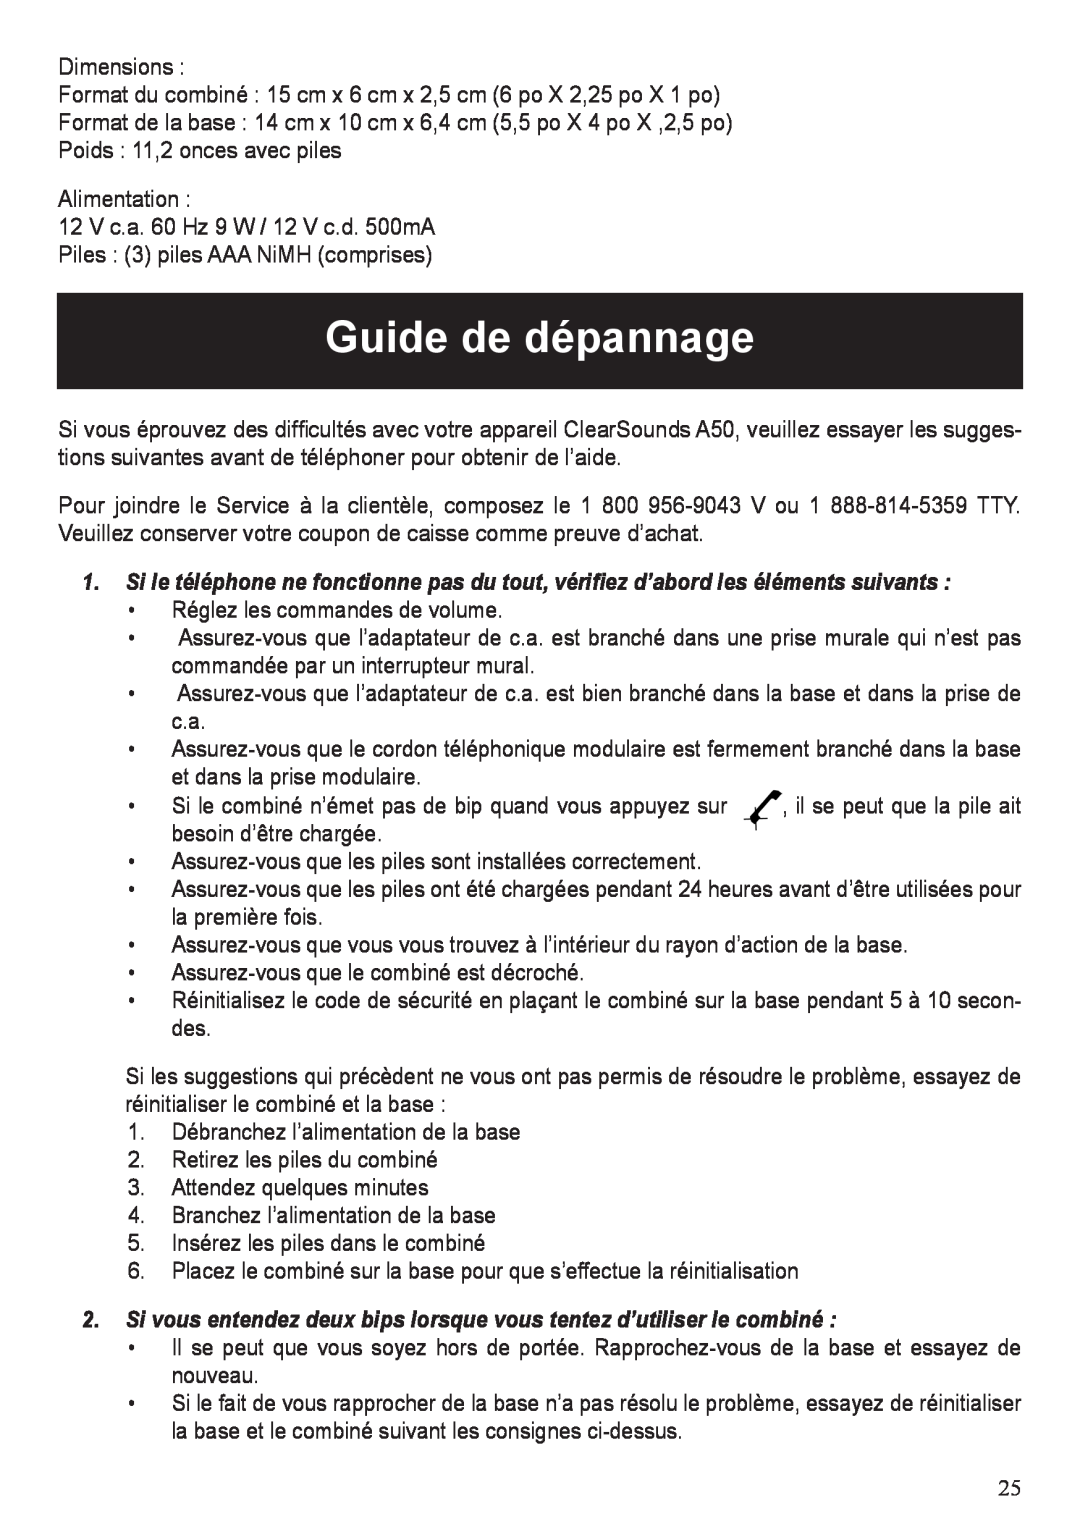 ClearSounds A50 user manual Guide de dépannage 